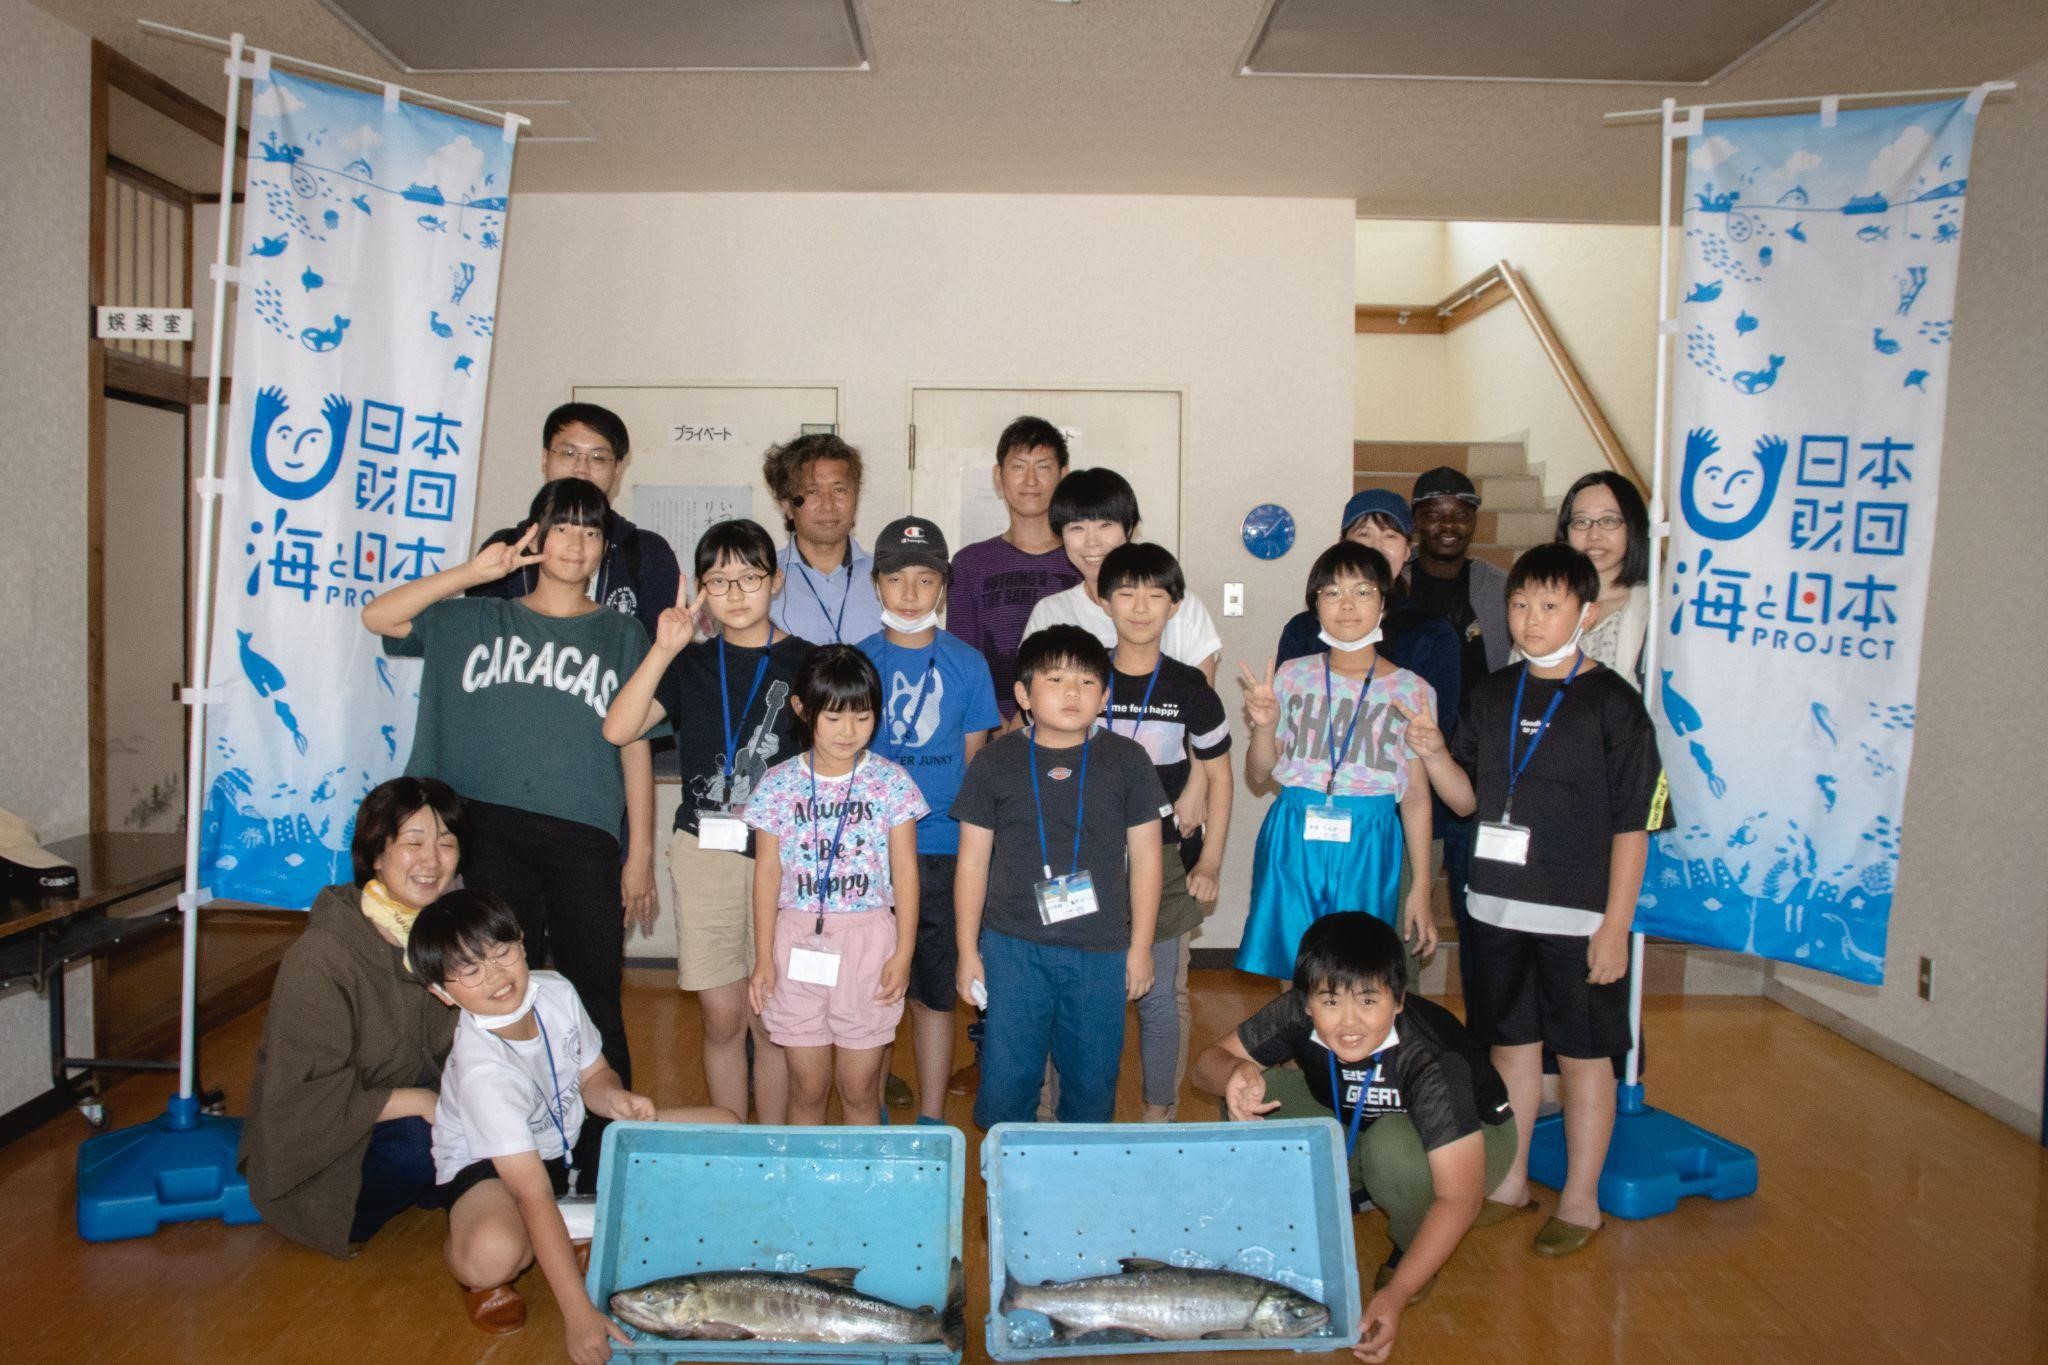 7家族19名が参加 かもめ島マリンピング 海と日本project かもめ島の海を調べて学ぶ 通年型海洋学習イベント みらいジュニア研究員 秋 を開催しました 海と日本プロジェクト広報事務局のプレスリリース